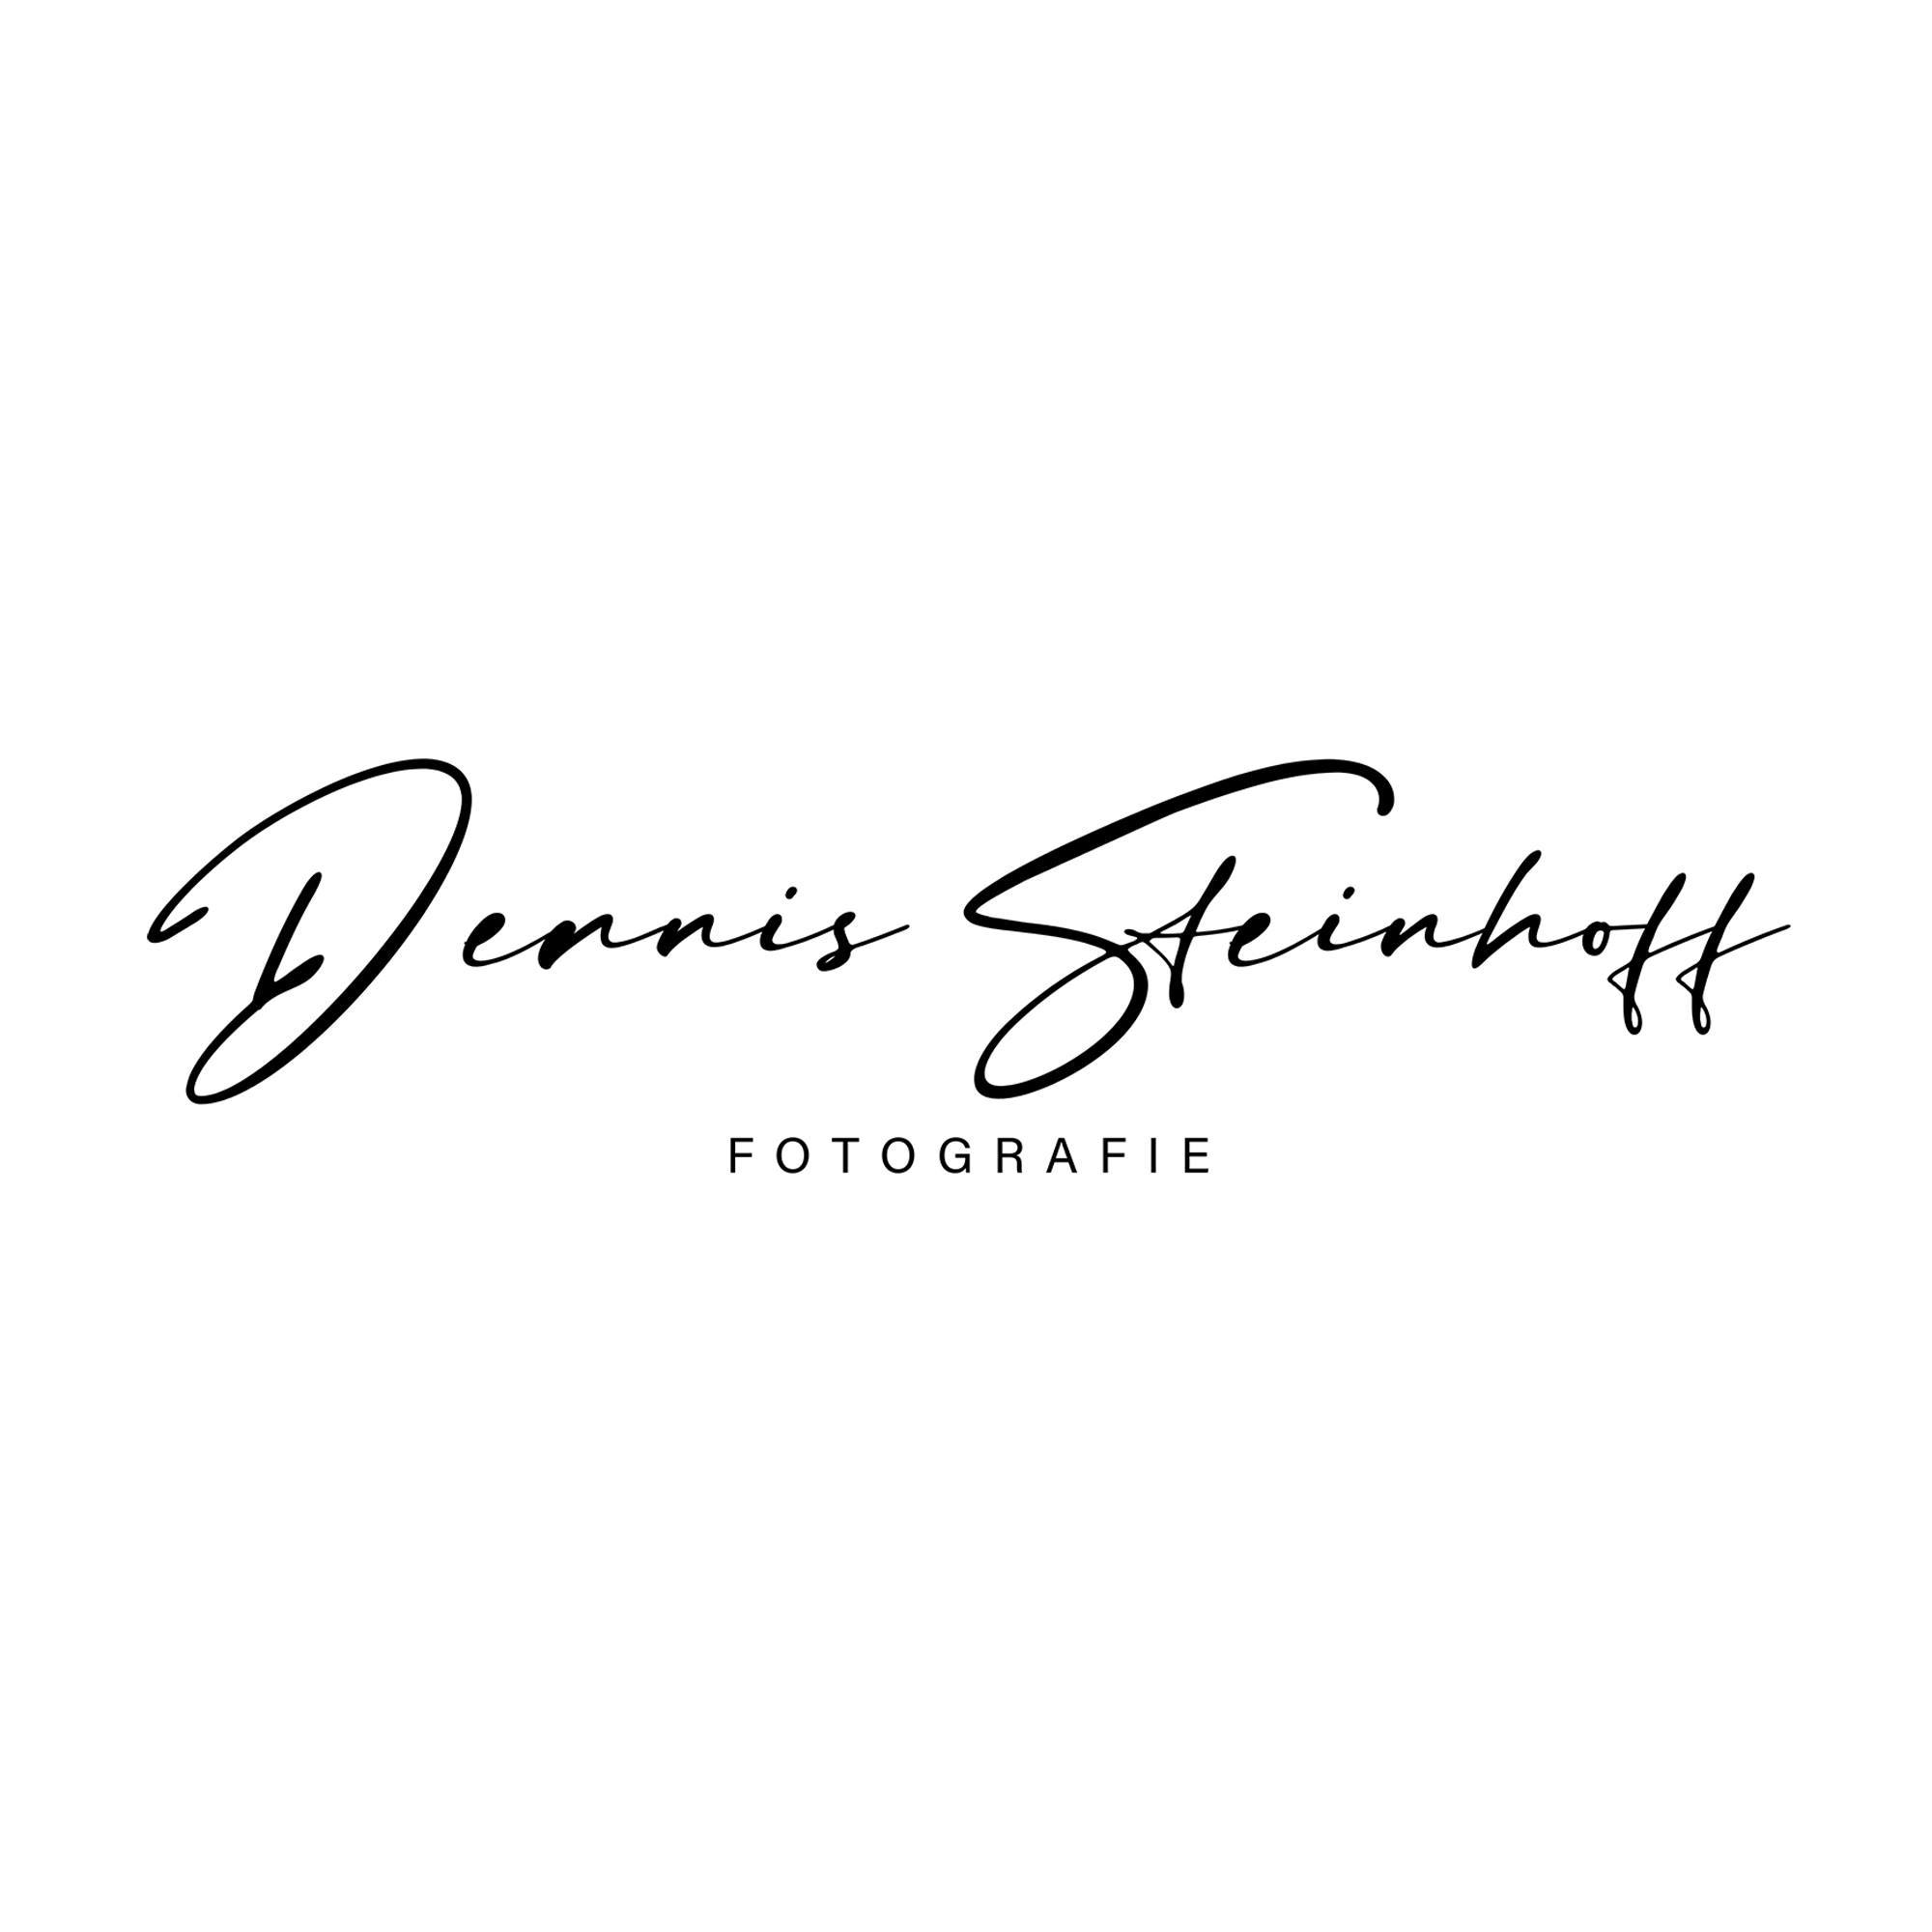 Dennis Steinhoff, Fotograf